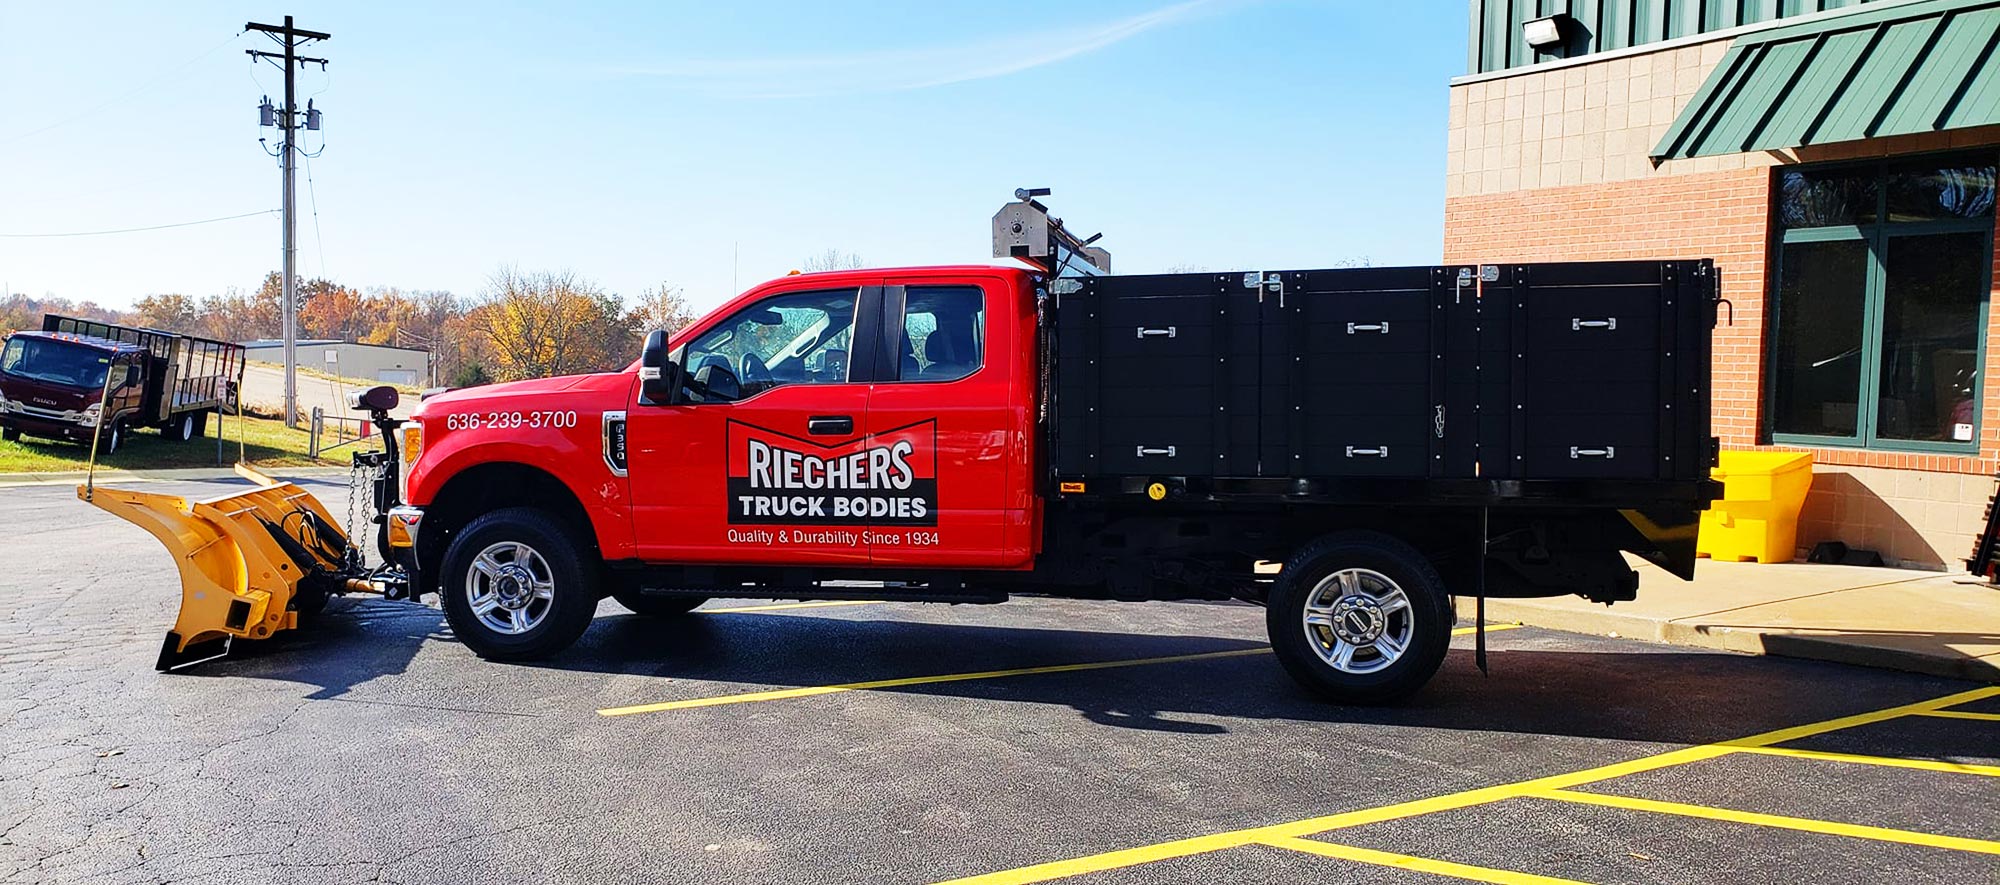 Riechers branded truck